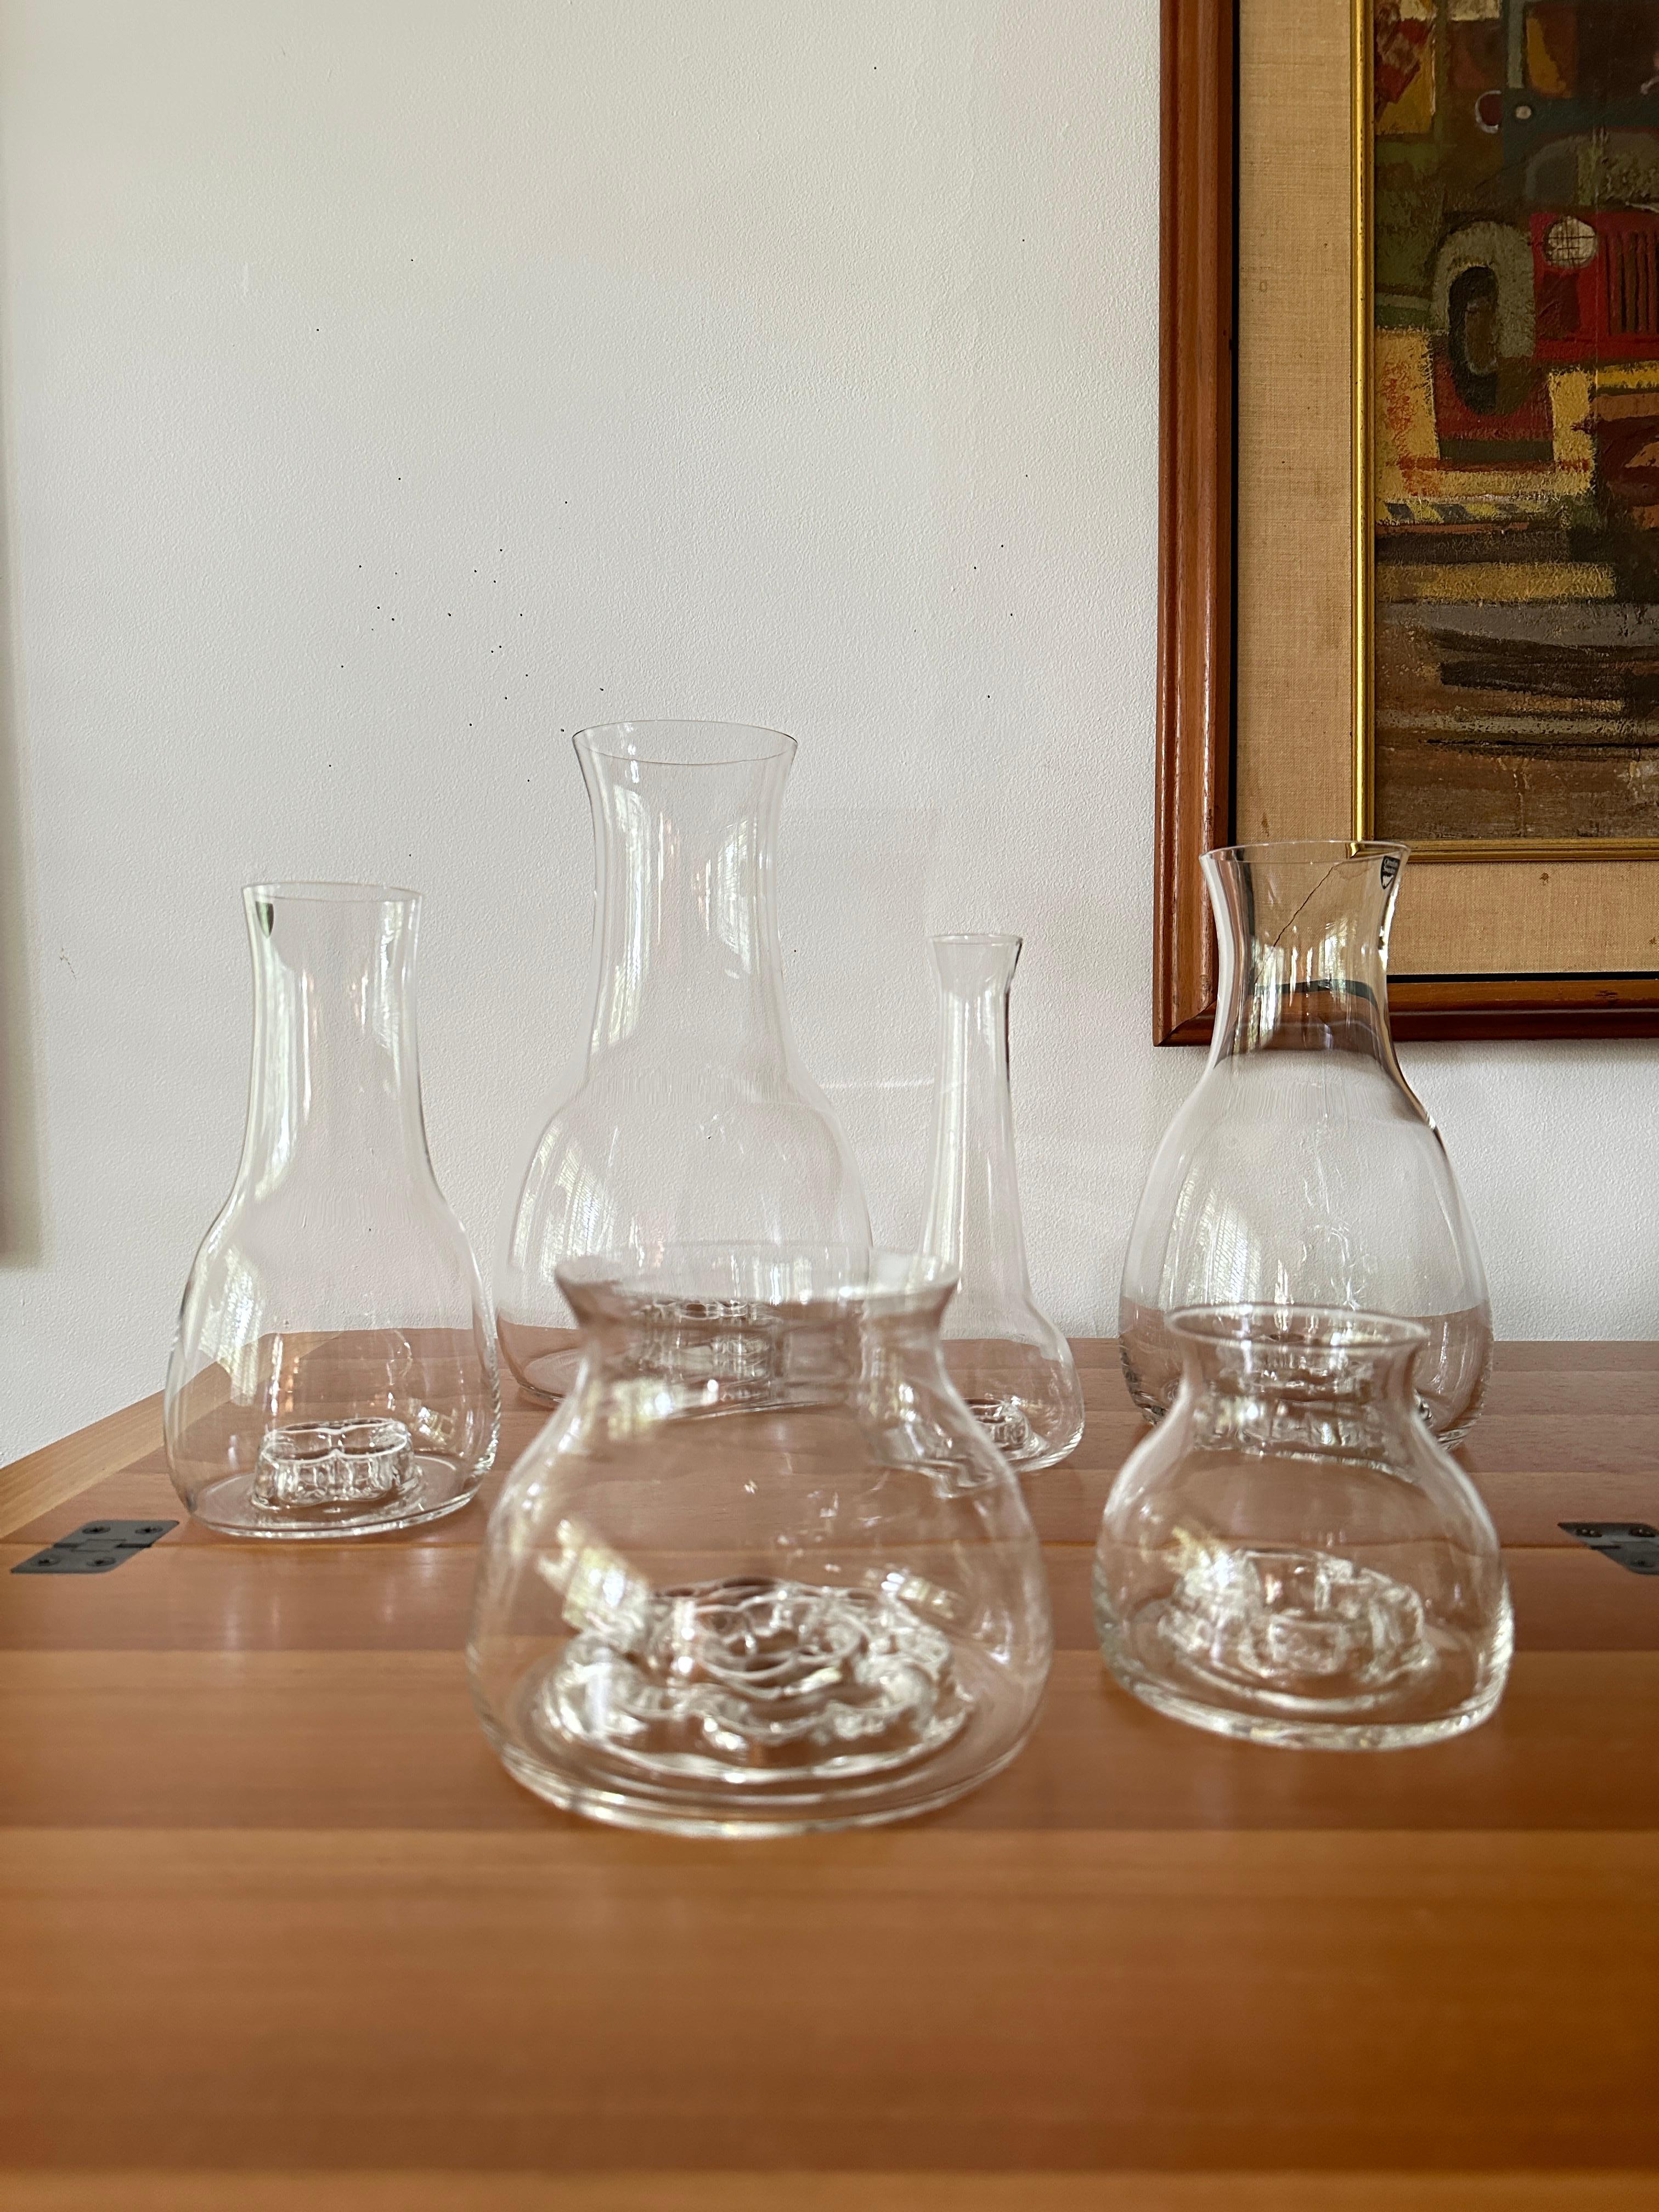 BESCHREIBUNG

Sechs mundgeblasene Flora-Vasen aus Klarglas von Orrefors, entworfen von Olle Alberius in den 1970er Jahren. Die Vasen haben einen einzigartigen Blumenfrosch, der in den Boden eingegossen ist.

Der 1926 in Schweden geborene